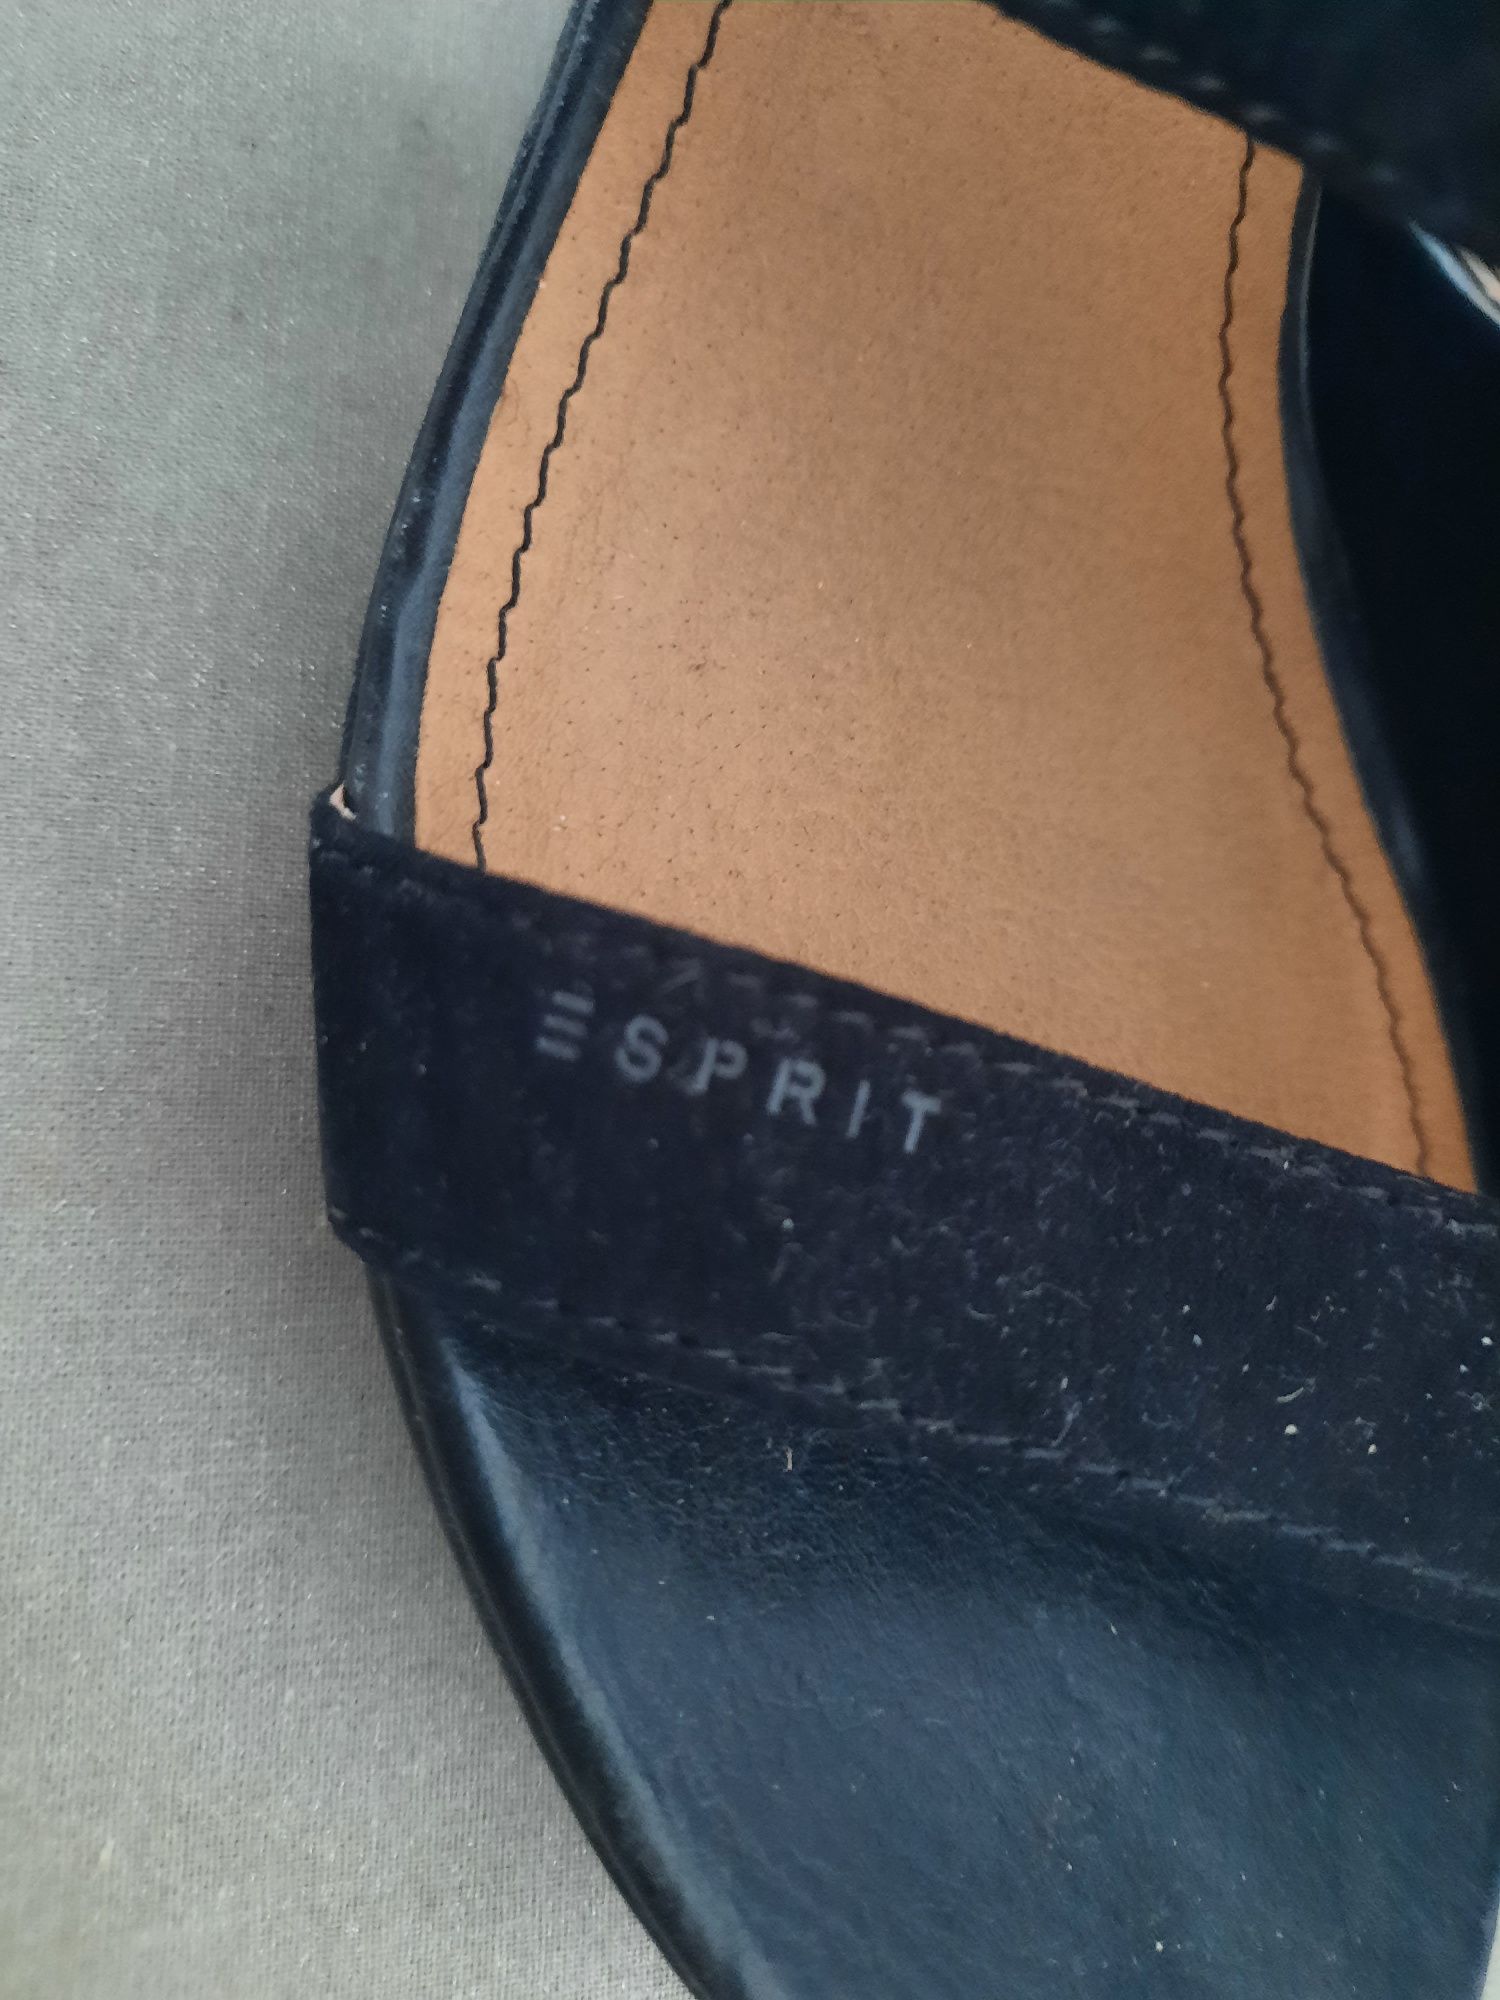 ESPRIT 38 sandały czarne koturn j.NOWE klapki